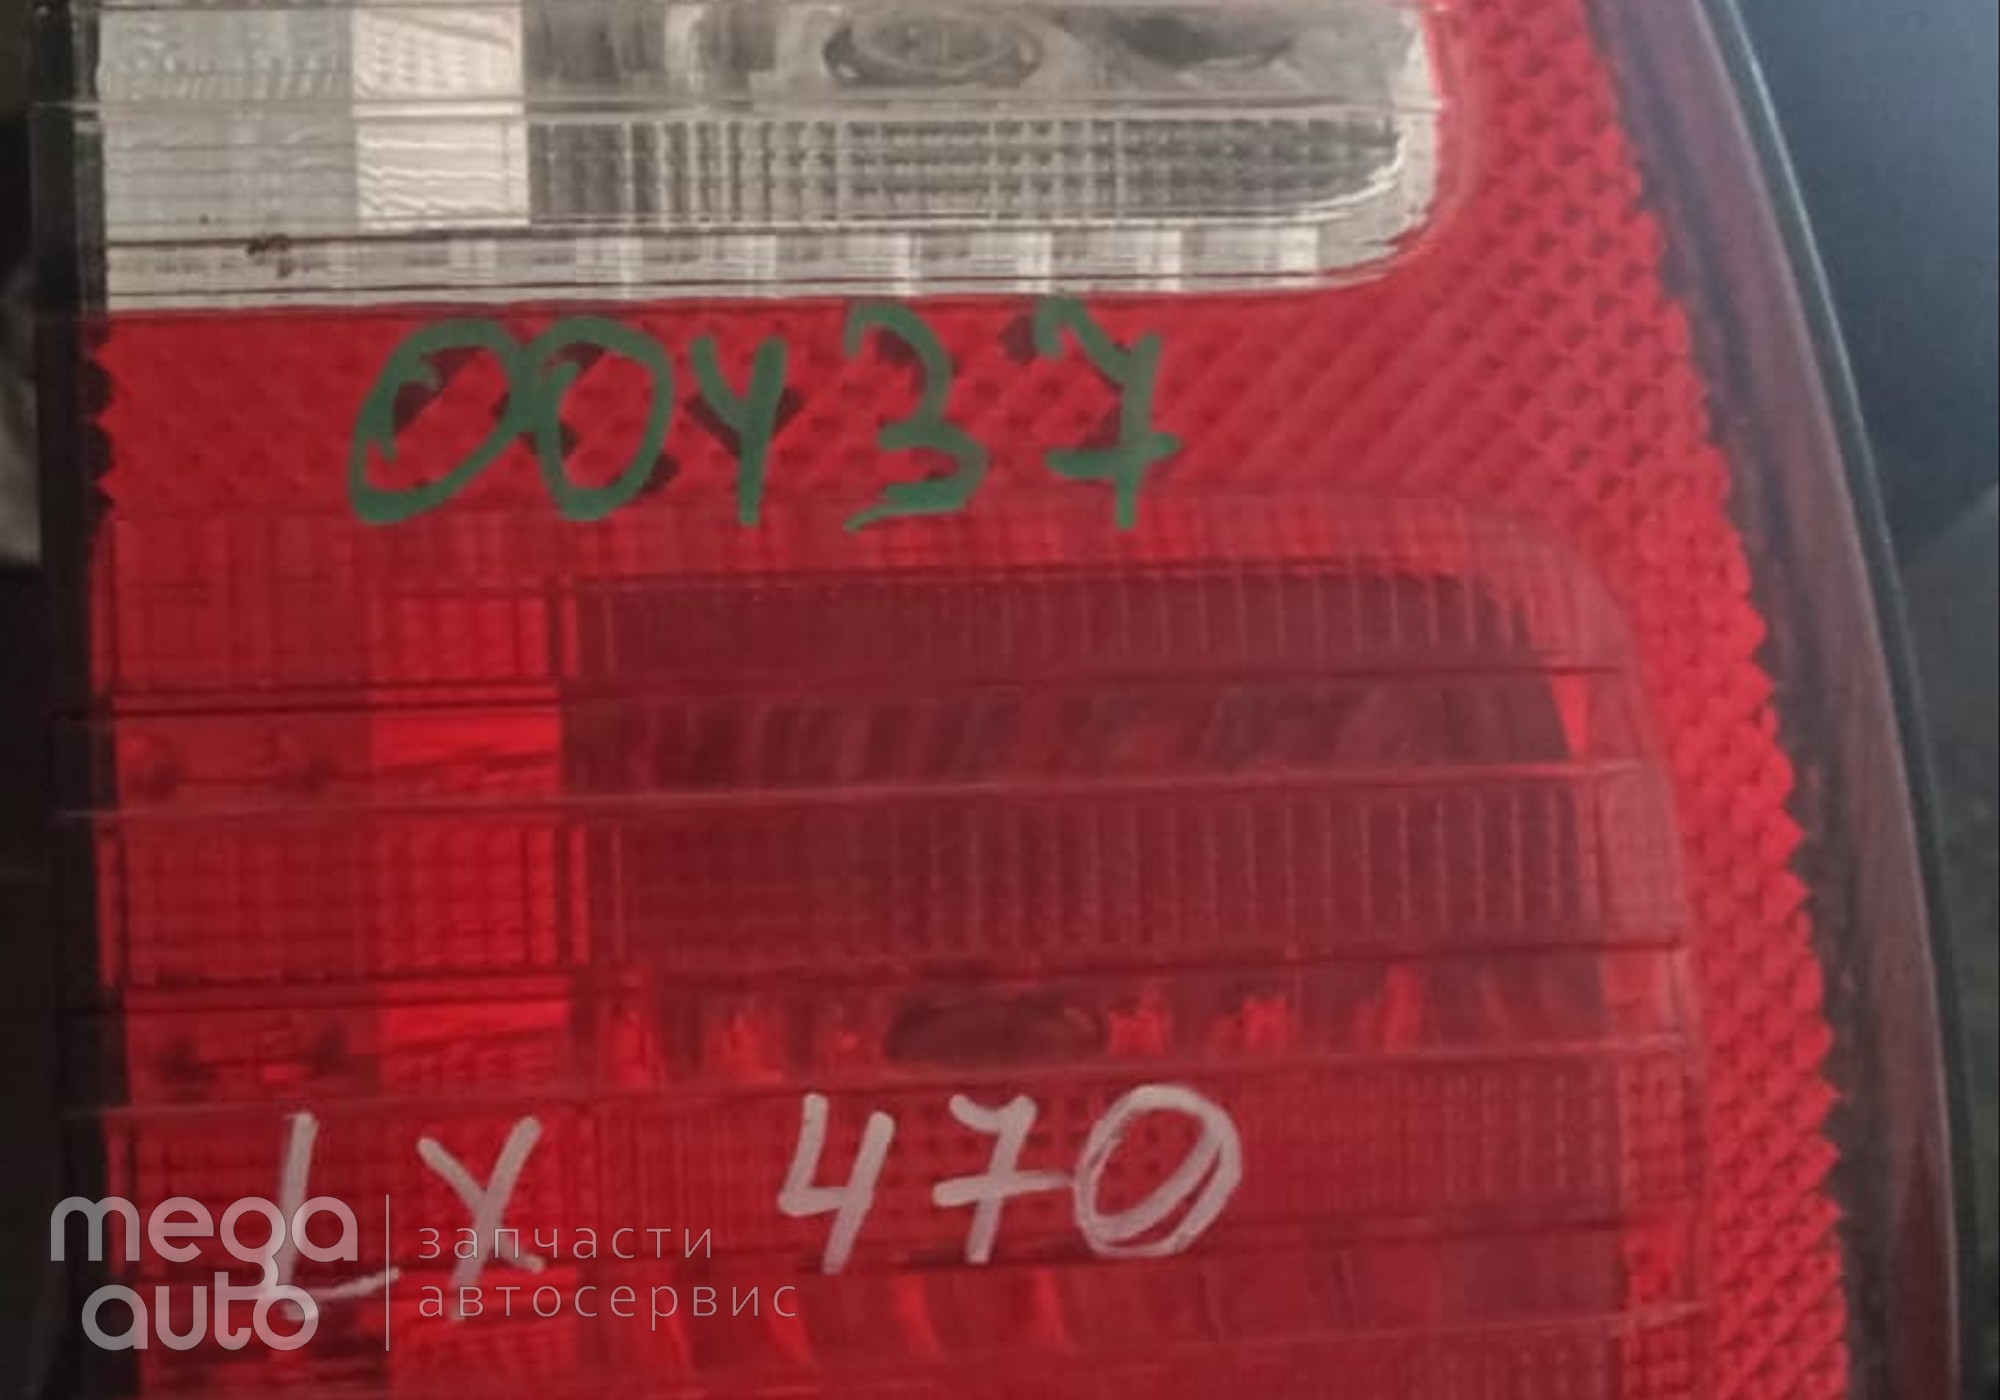 8158160171 Фонарь задний правый внутренний лексус 470 , крузак 100 для Lexus LX